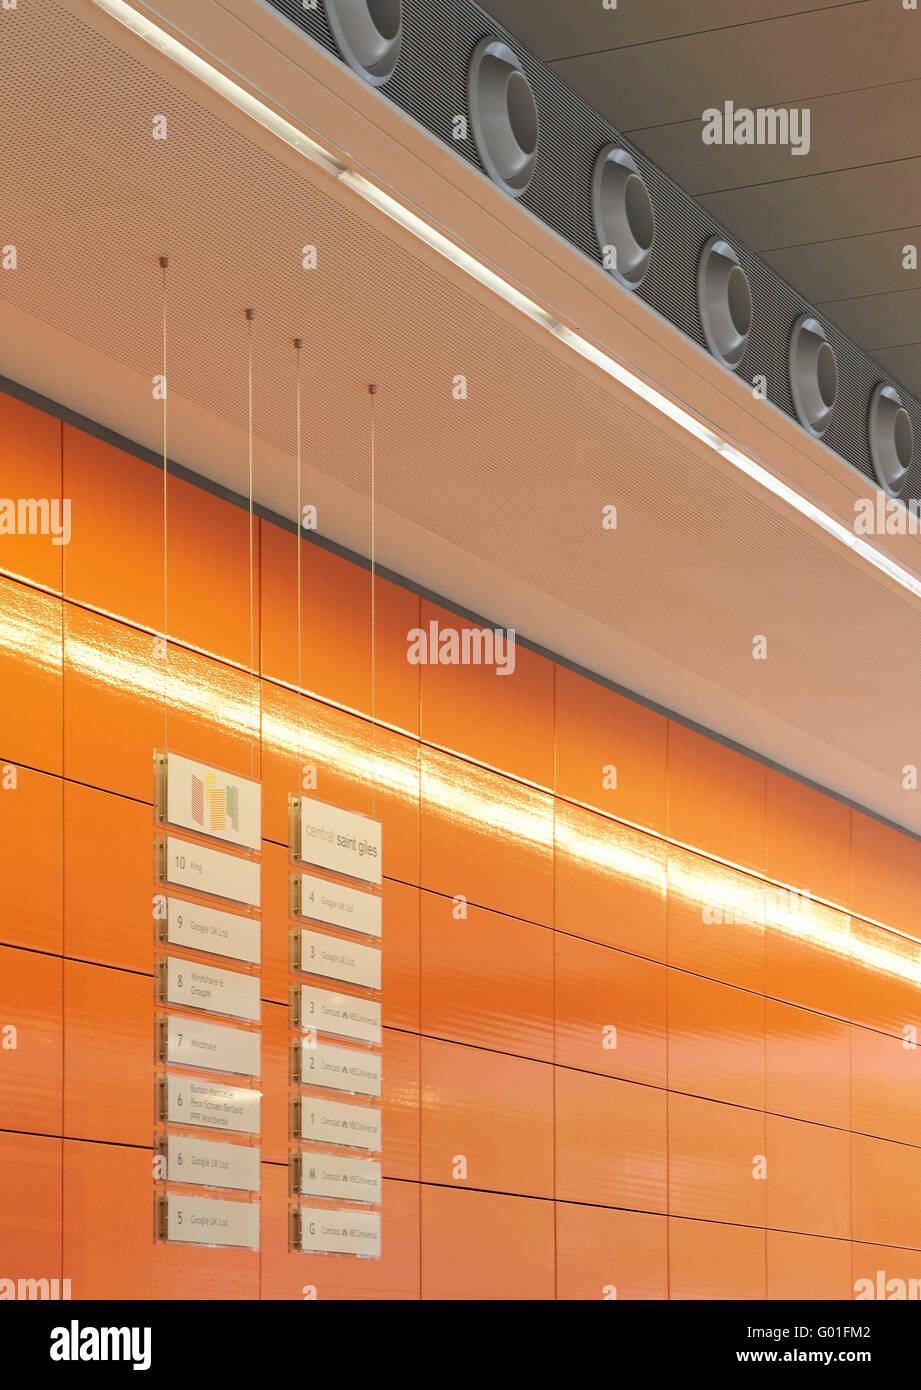 Détail de l'emblématique des carreaux de céramique de couleur orange. Central Saint Giles, London, Royaume-Uni. Architecte : Renzo Piano Building Workshop, 2015. Banque D'Images